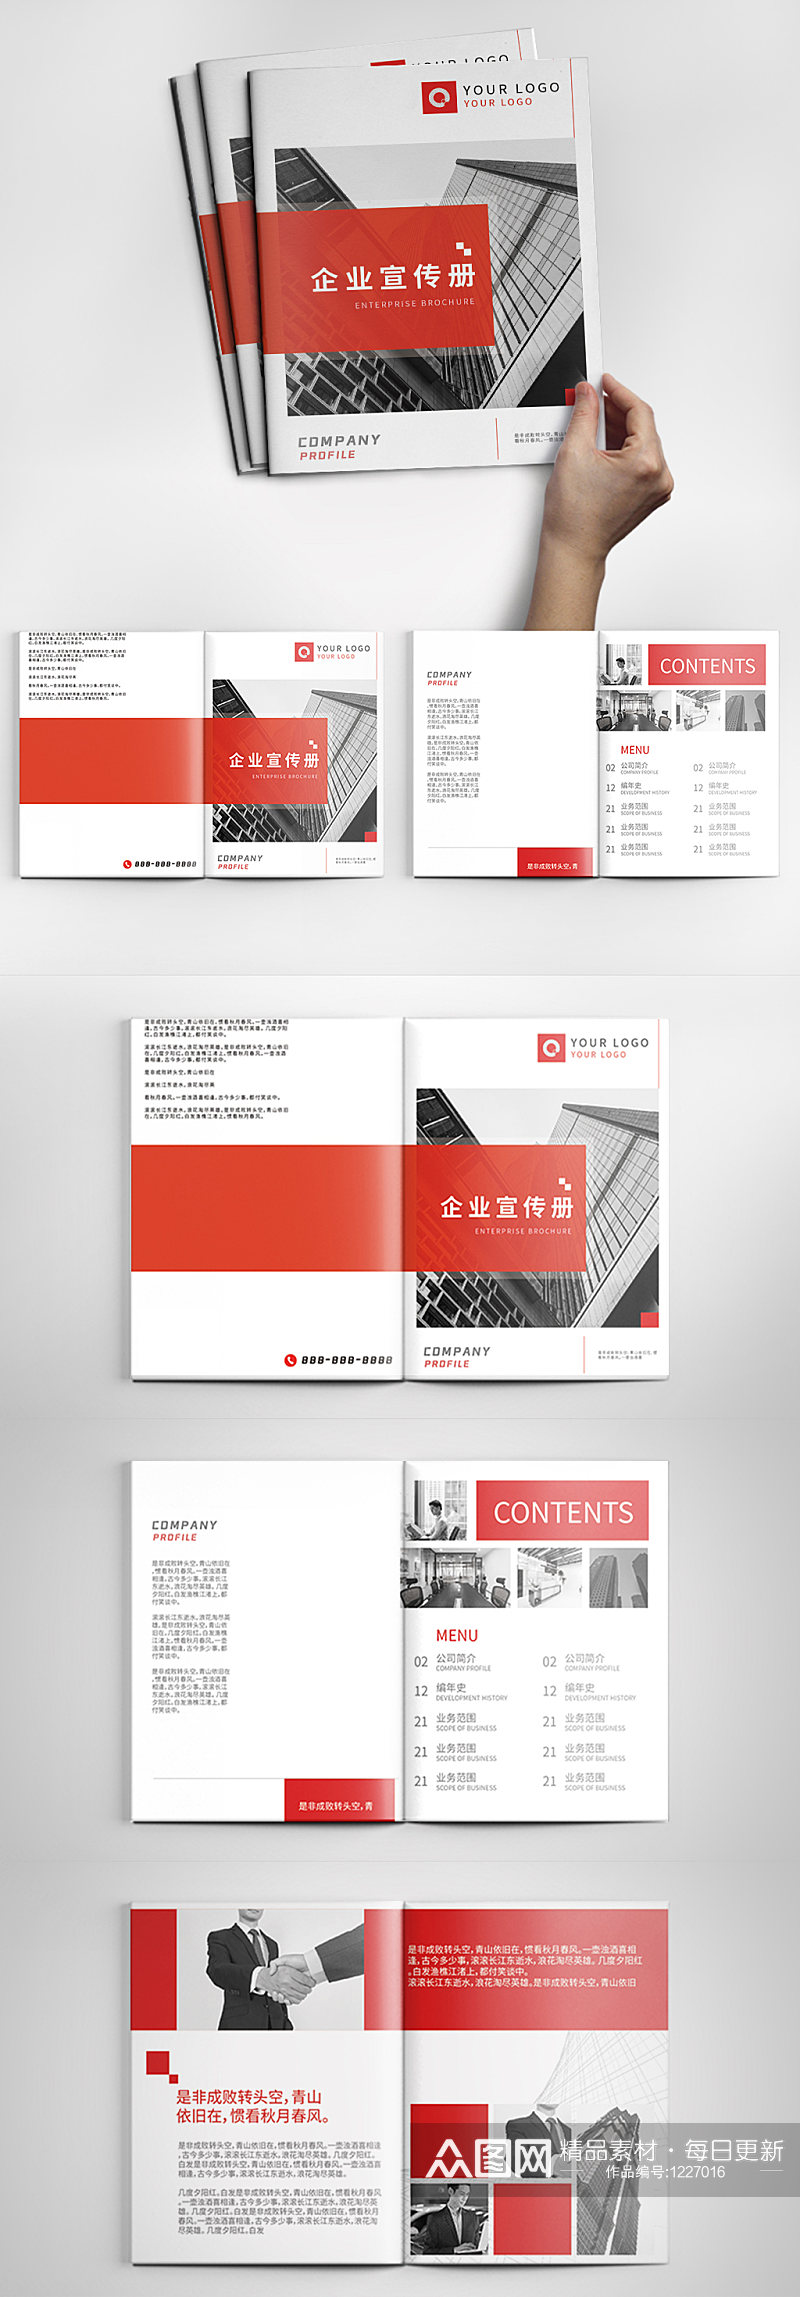 红色几何图形简约商务风格企业画册设计素材